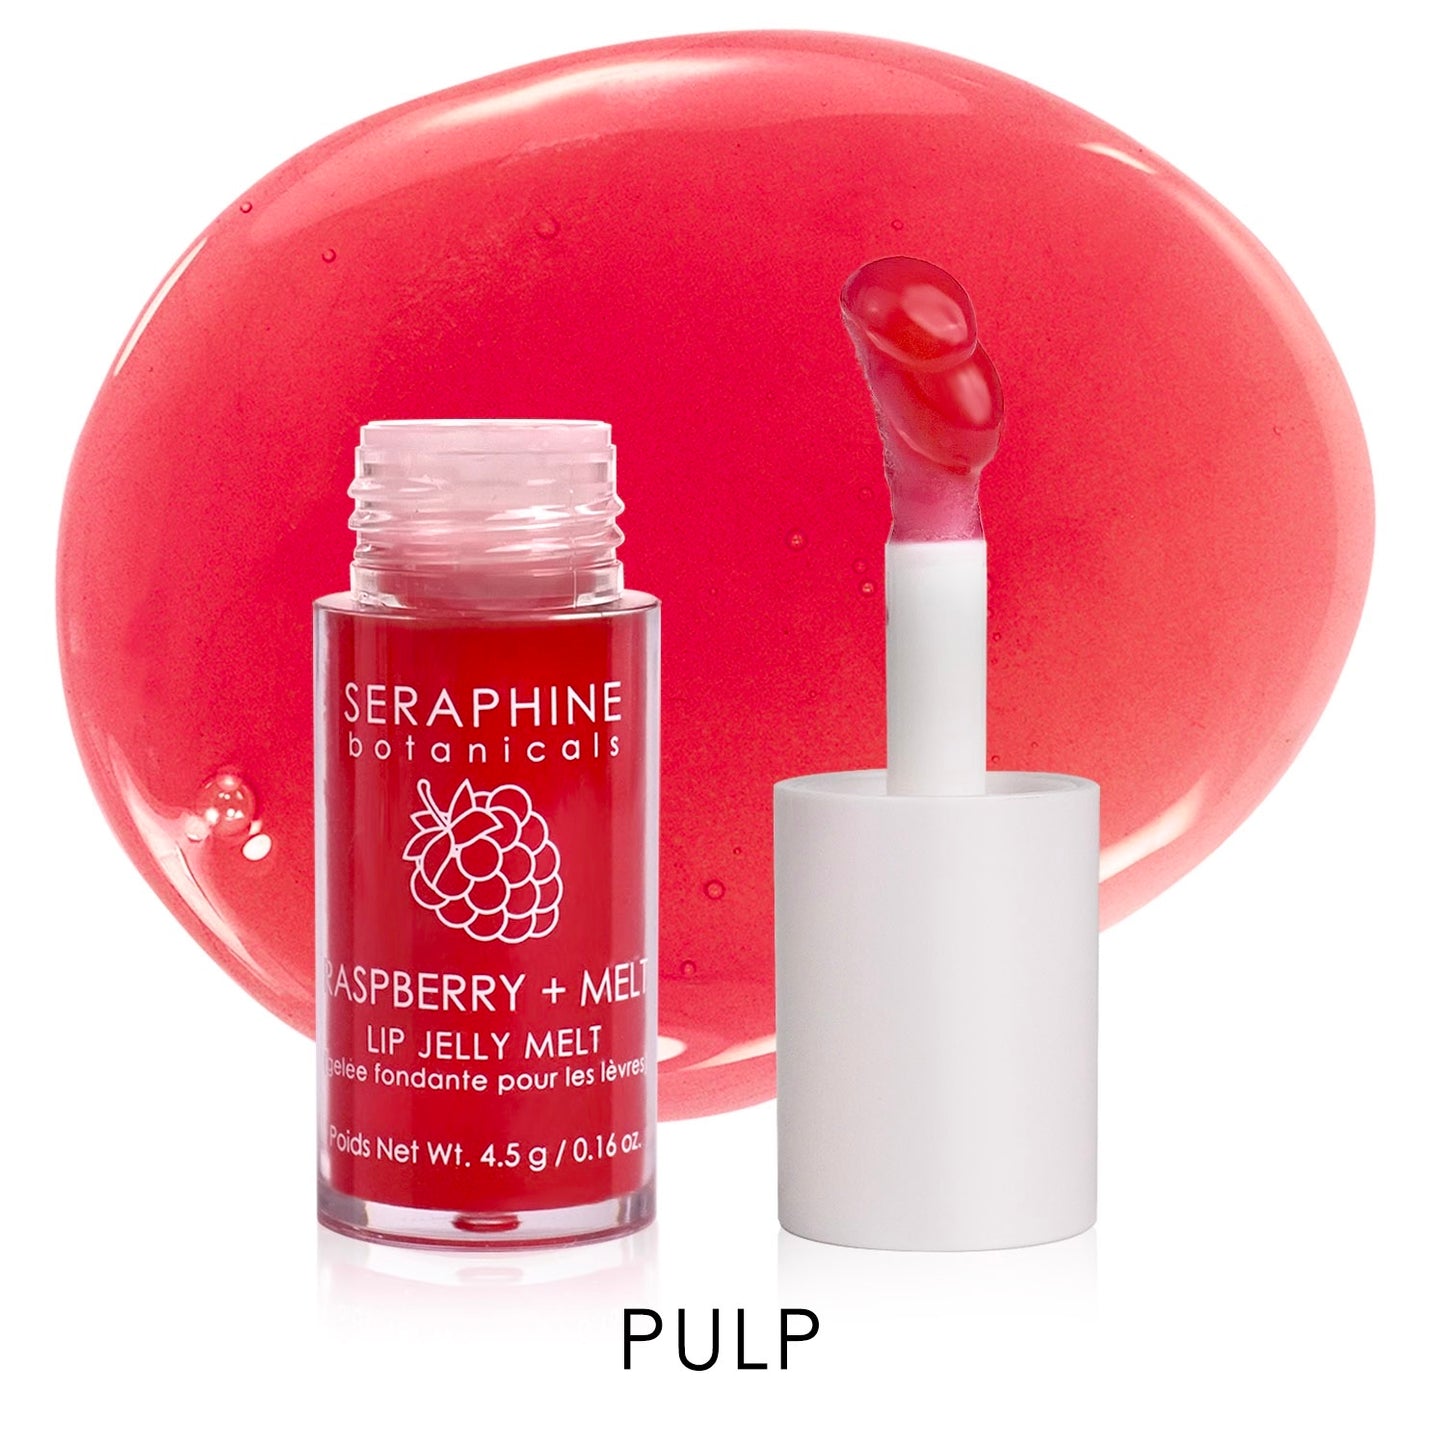 Raspberry + Melt - Lip Jelly Melt